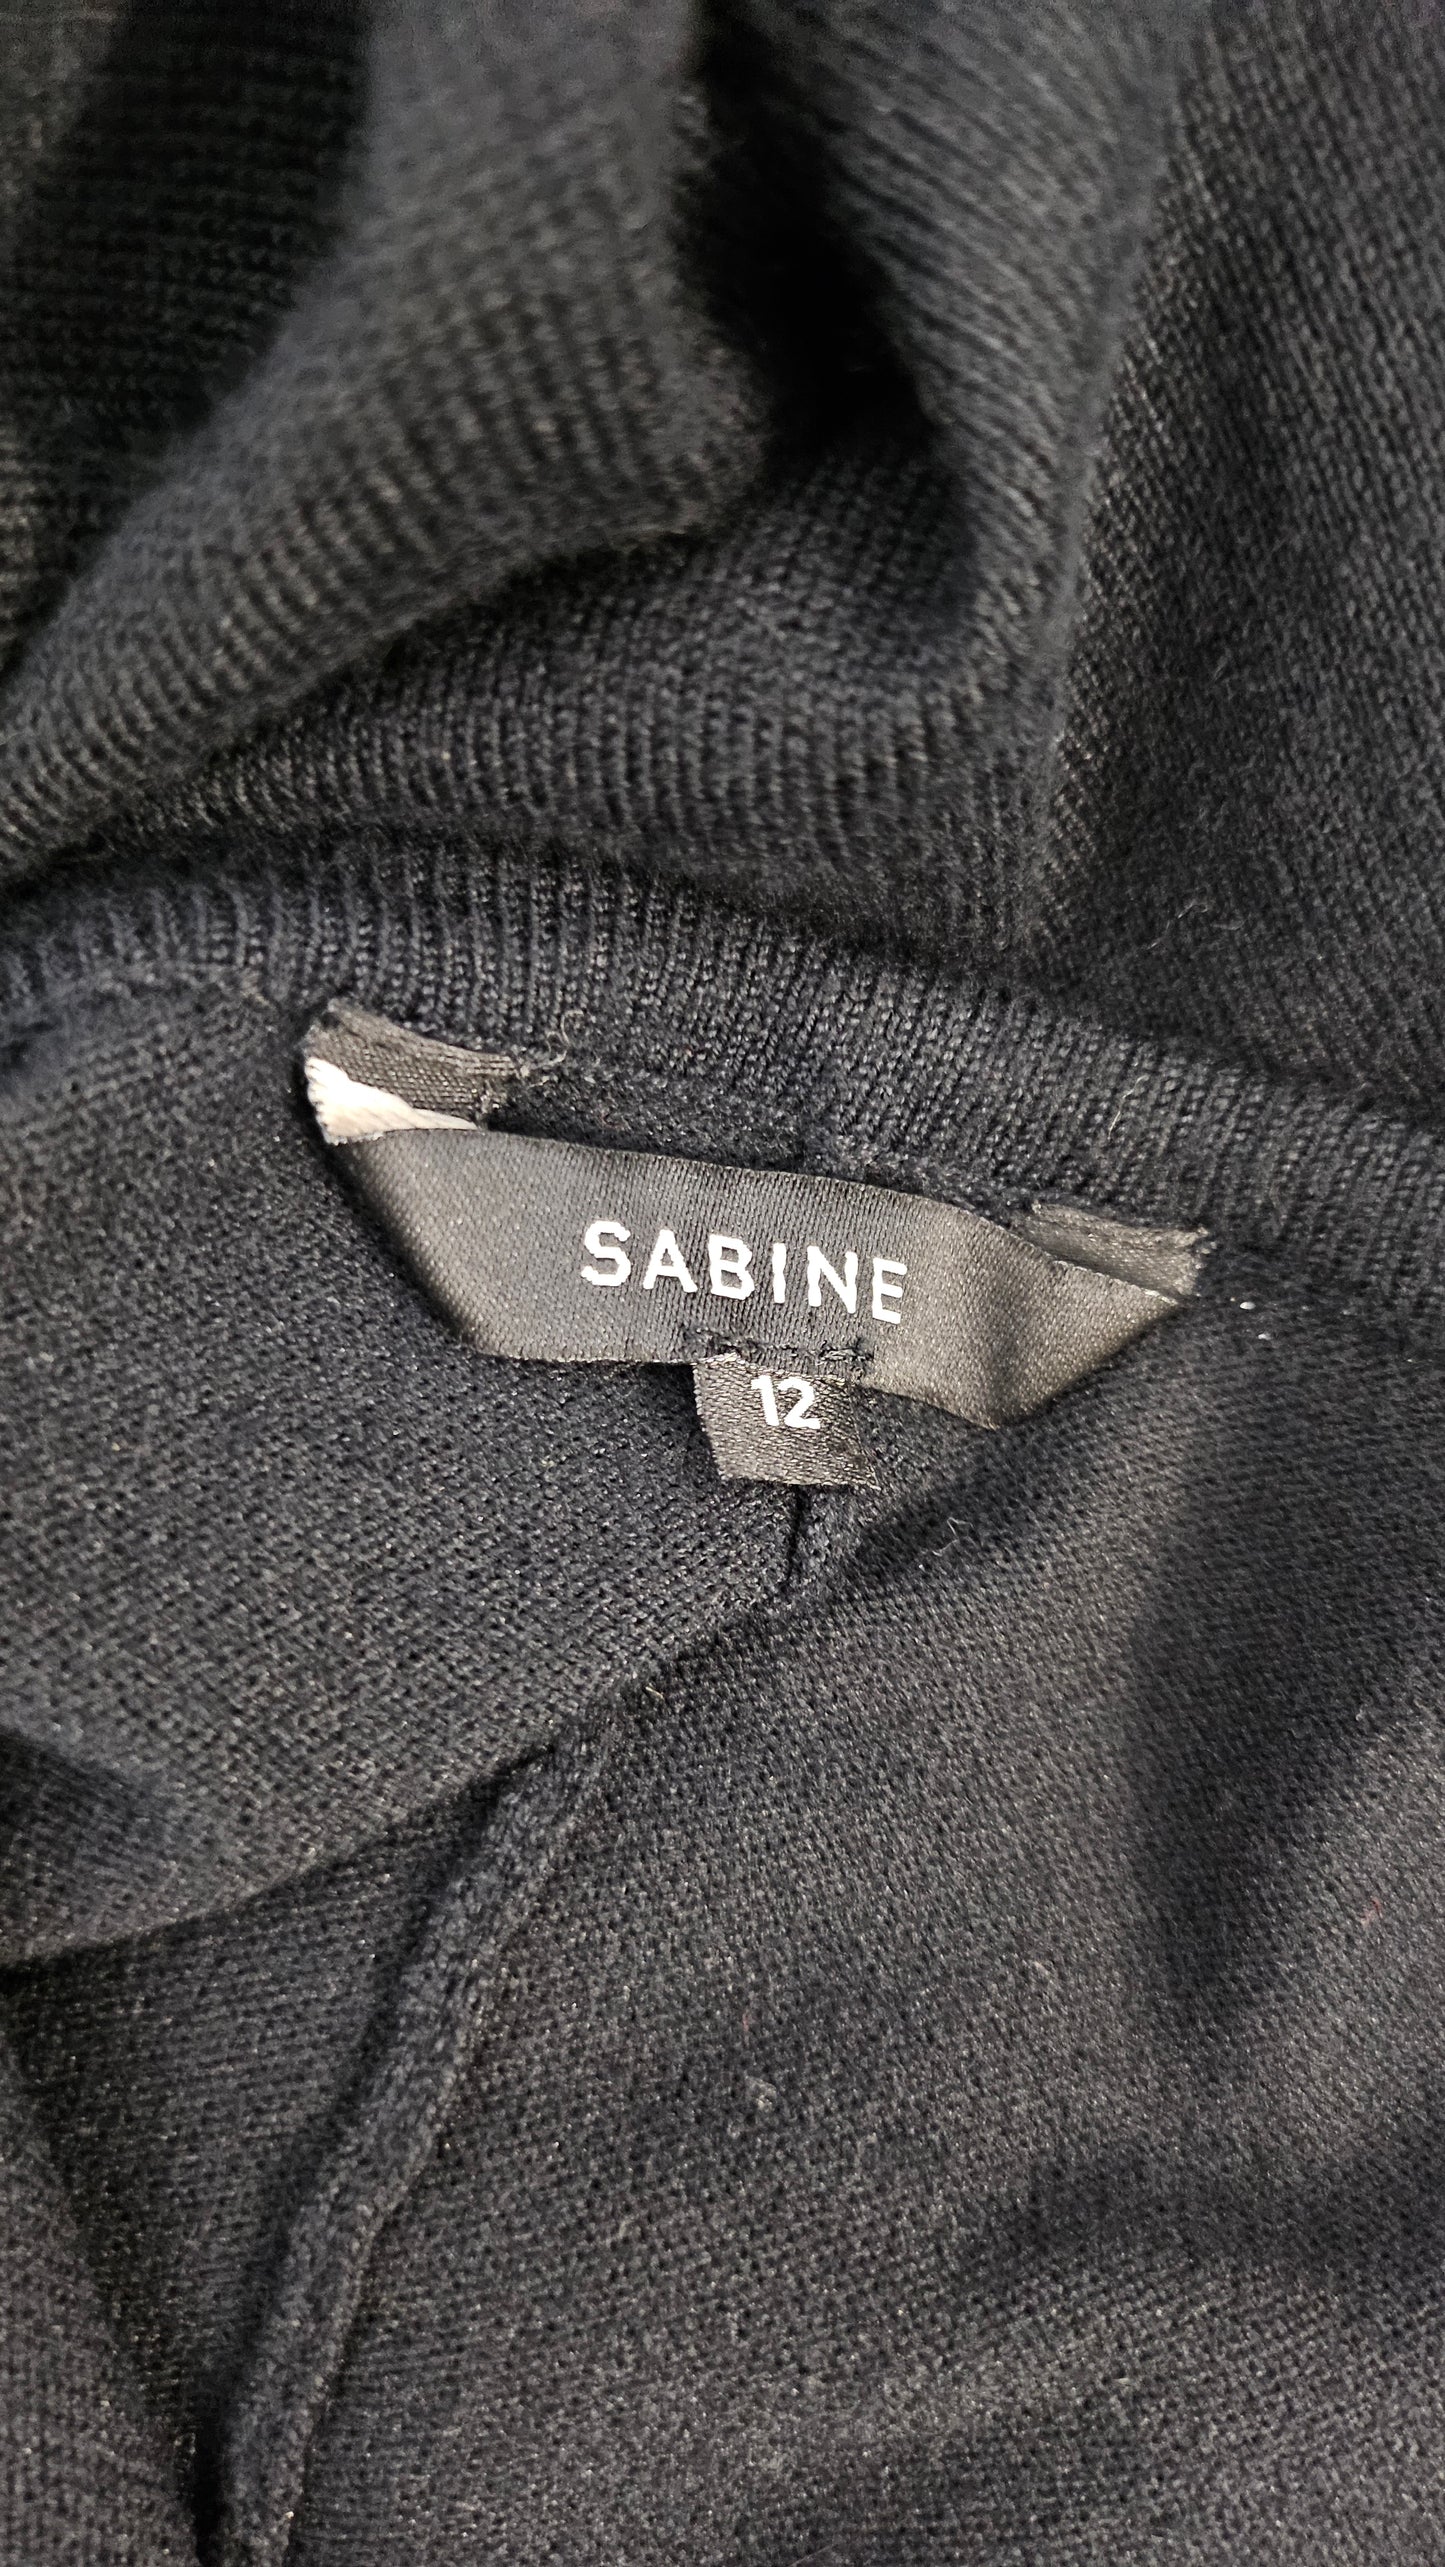 Sabine Black Tunic Top (12)